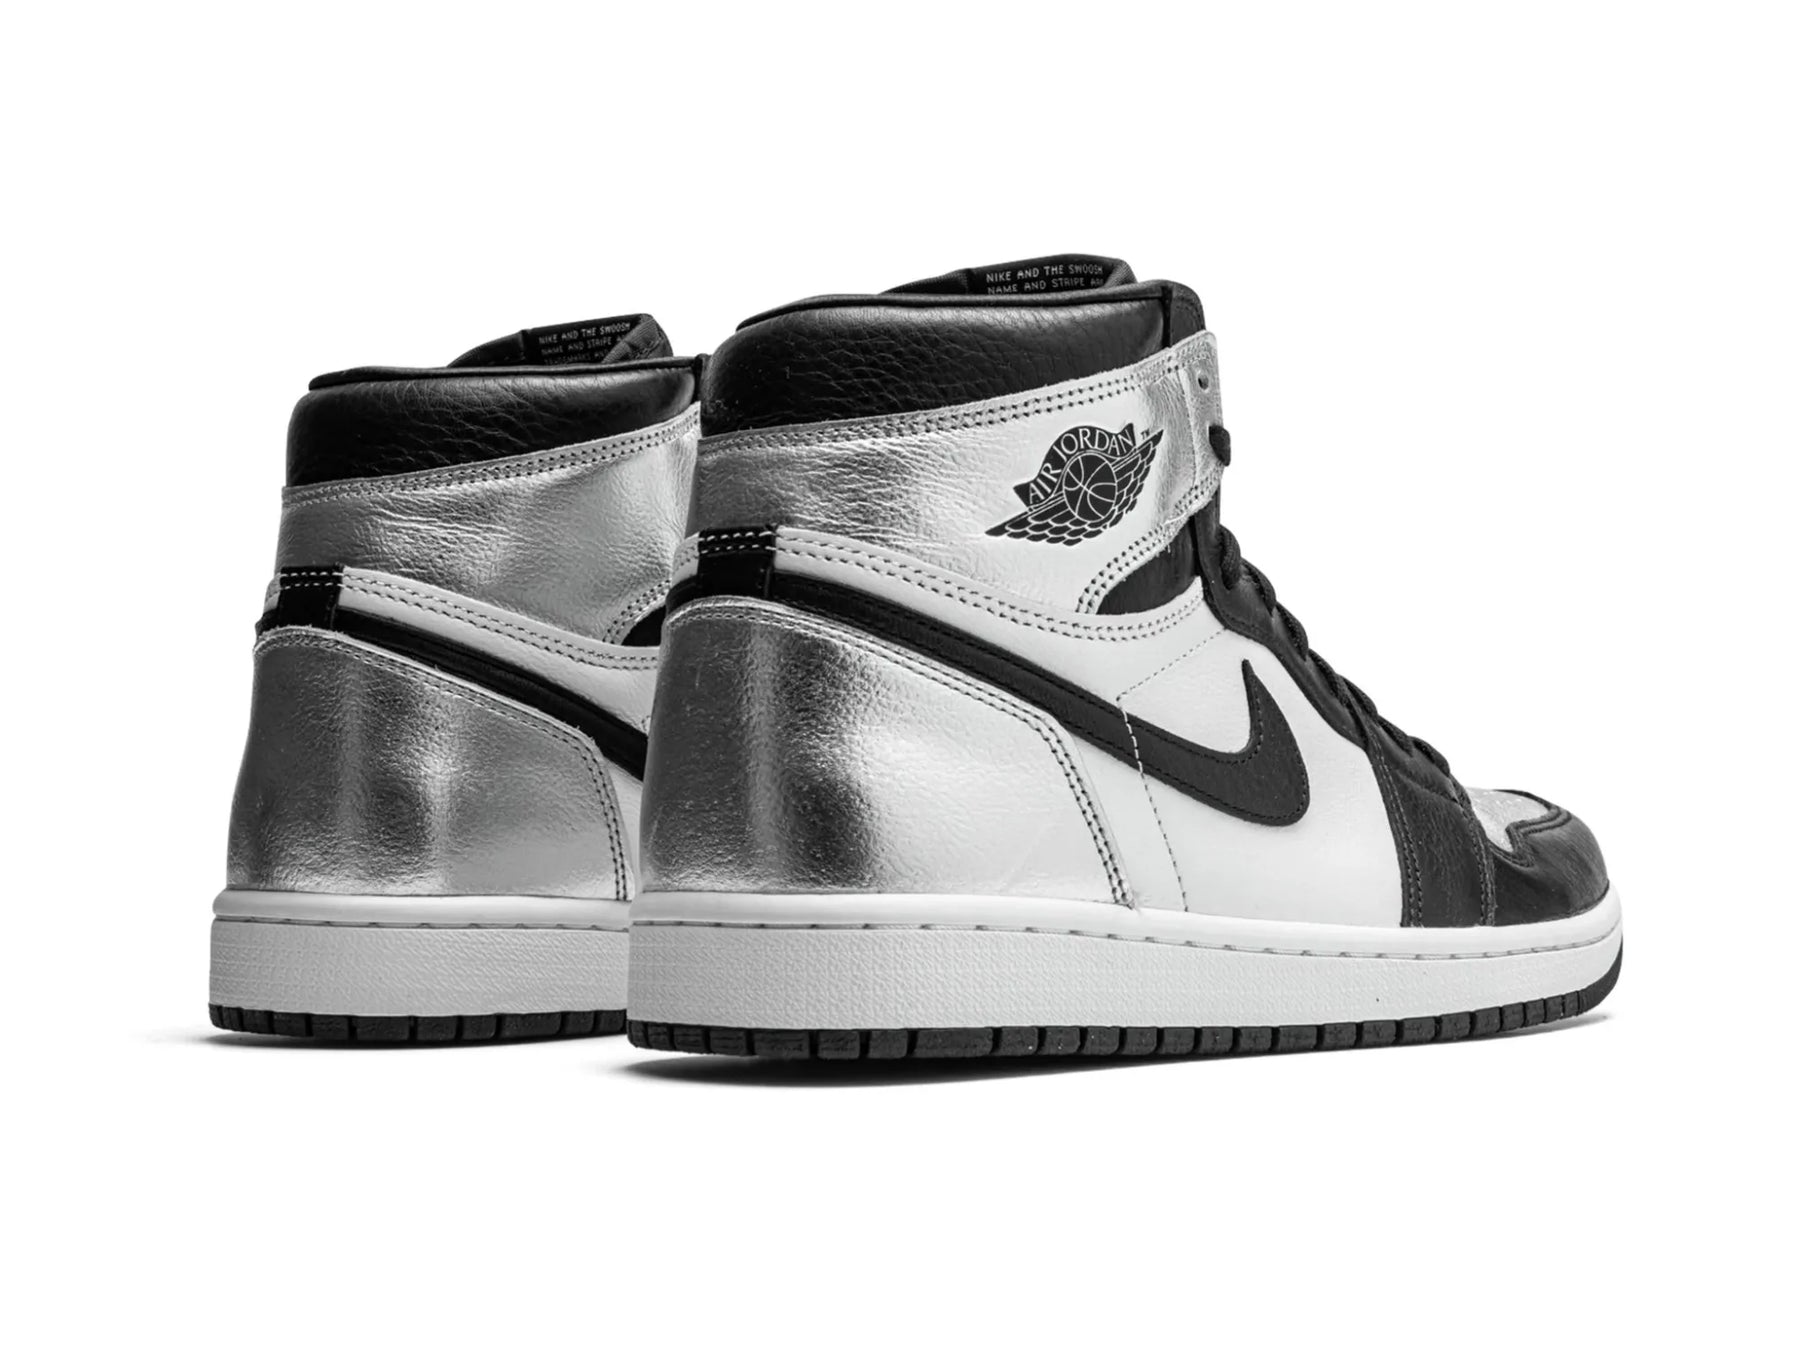 Nike Air Jordan 1 High "Silver Toe" - street-bill.dk